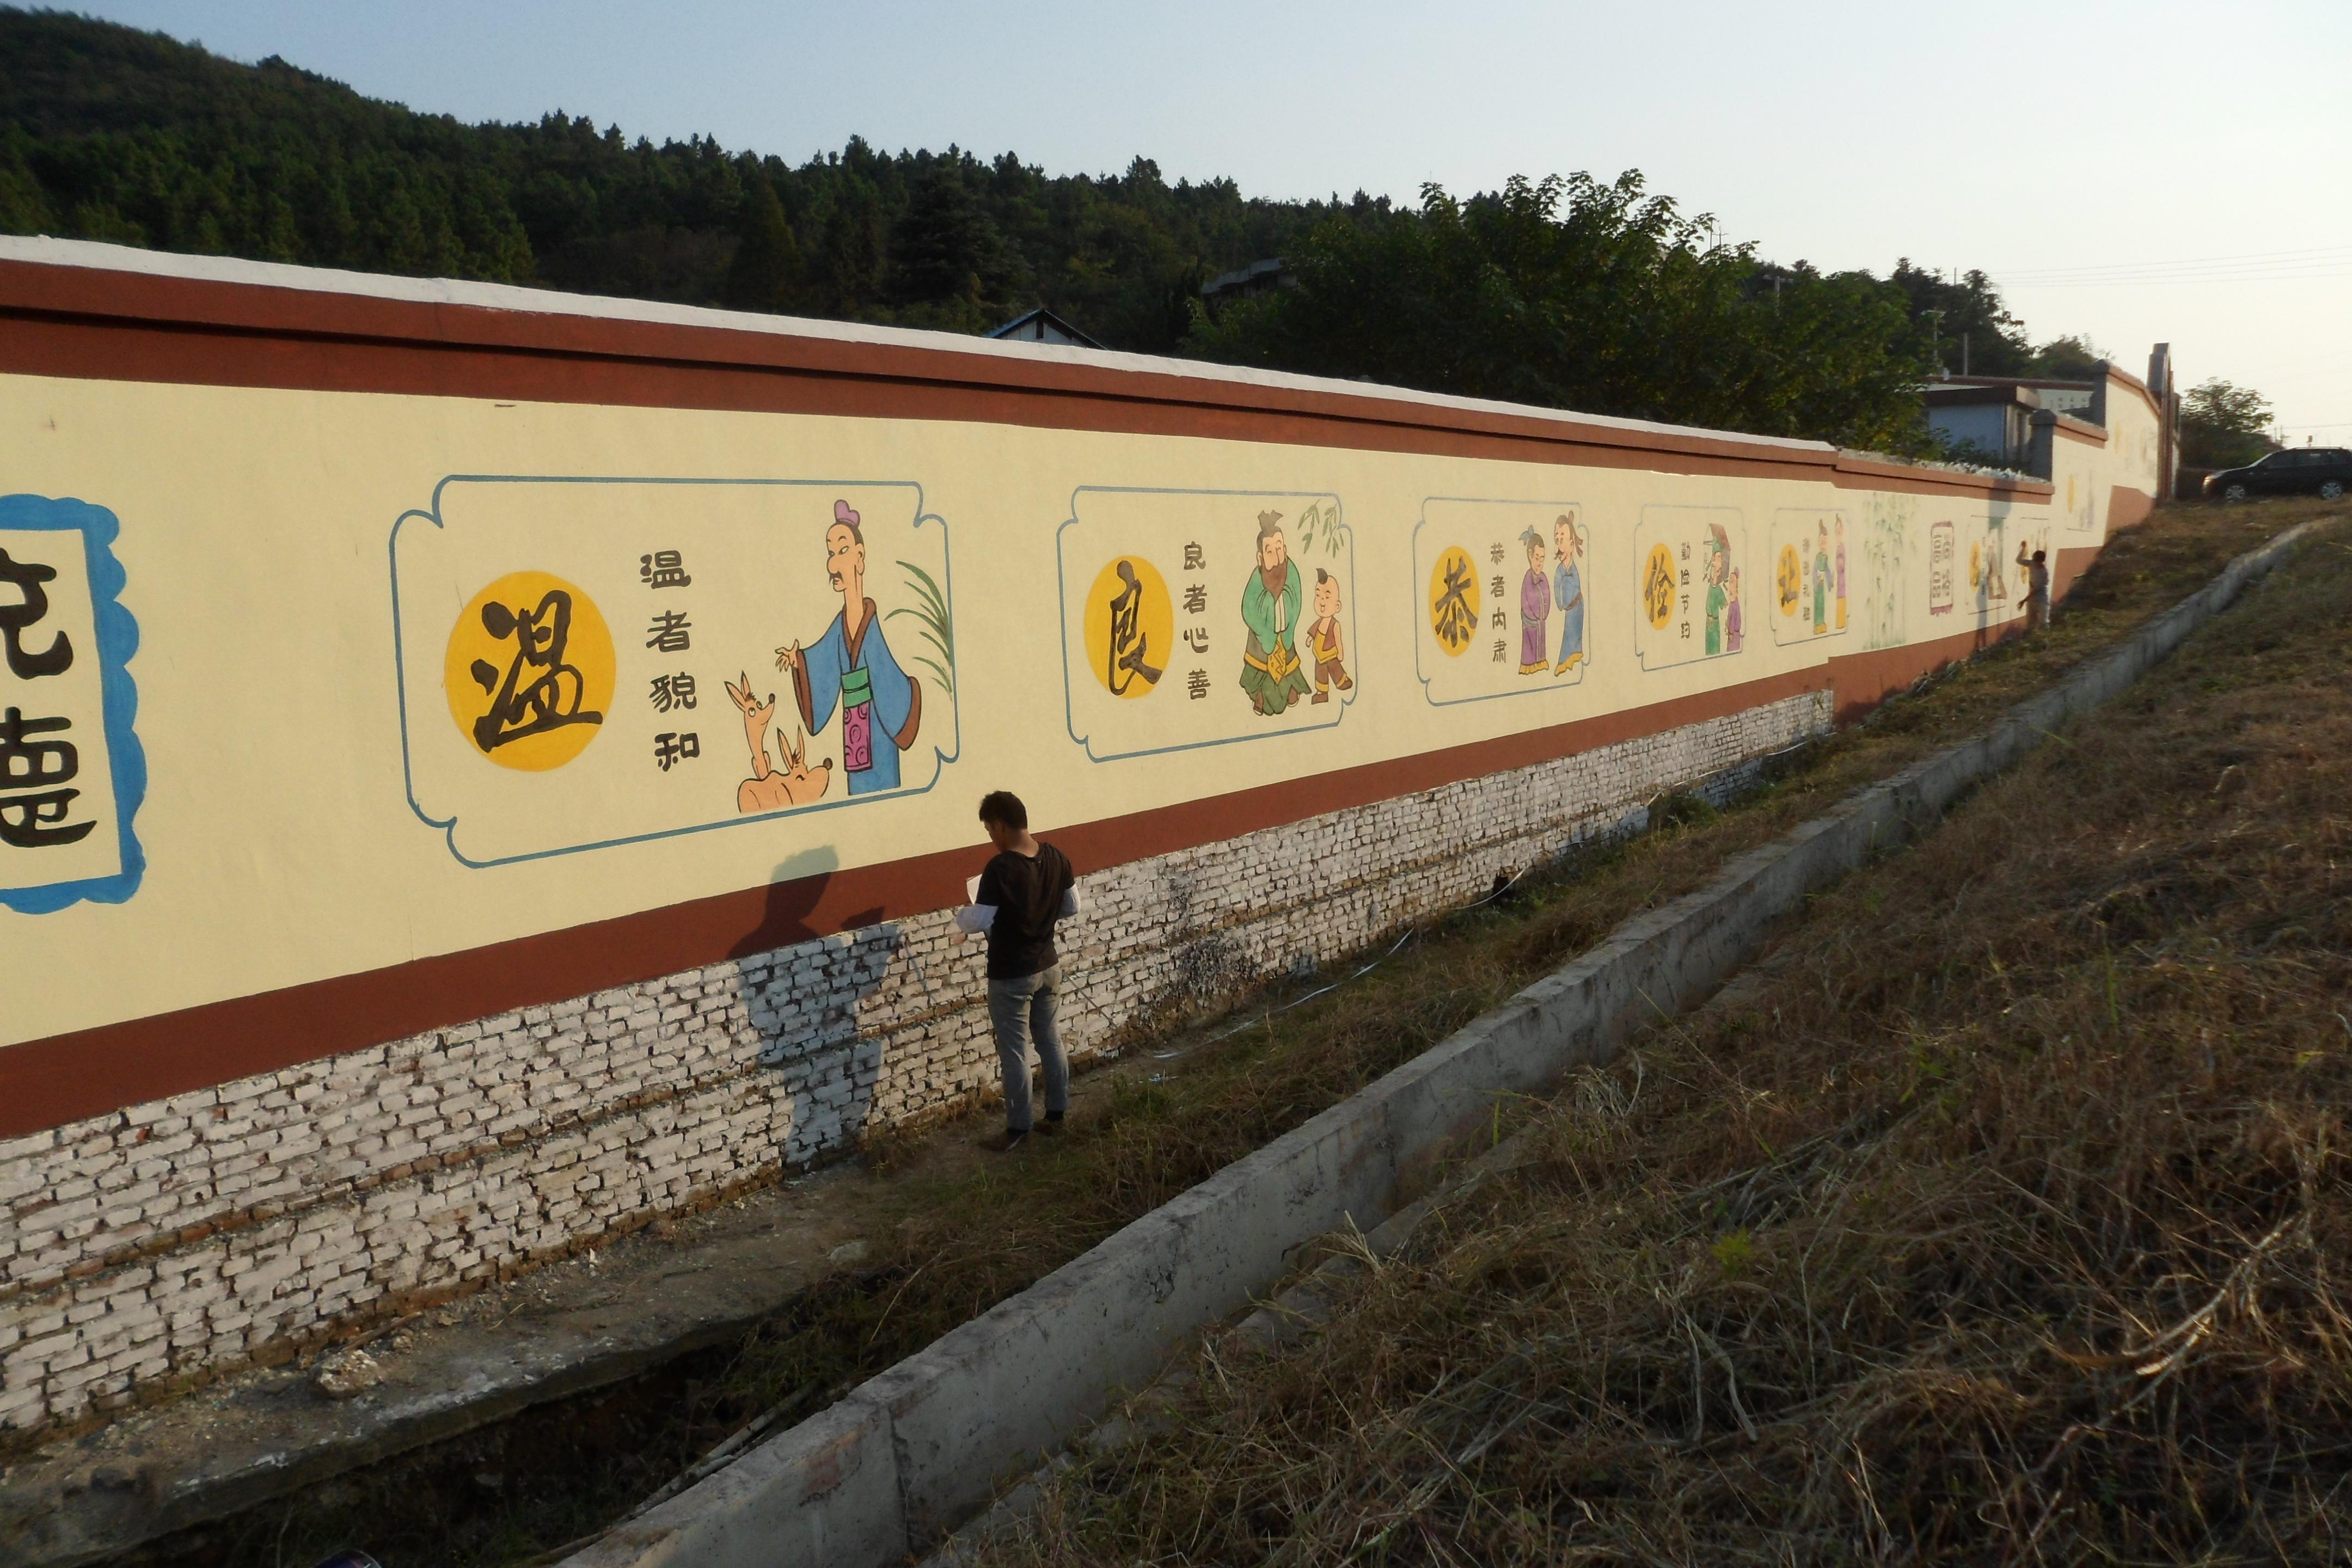 昆明中小学校园文化墙彩绘手绘壁画